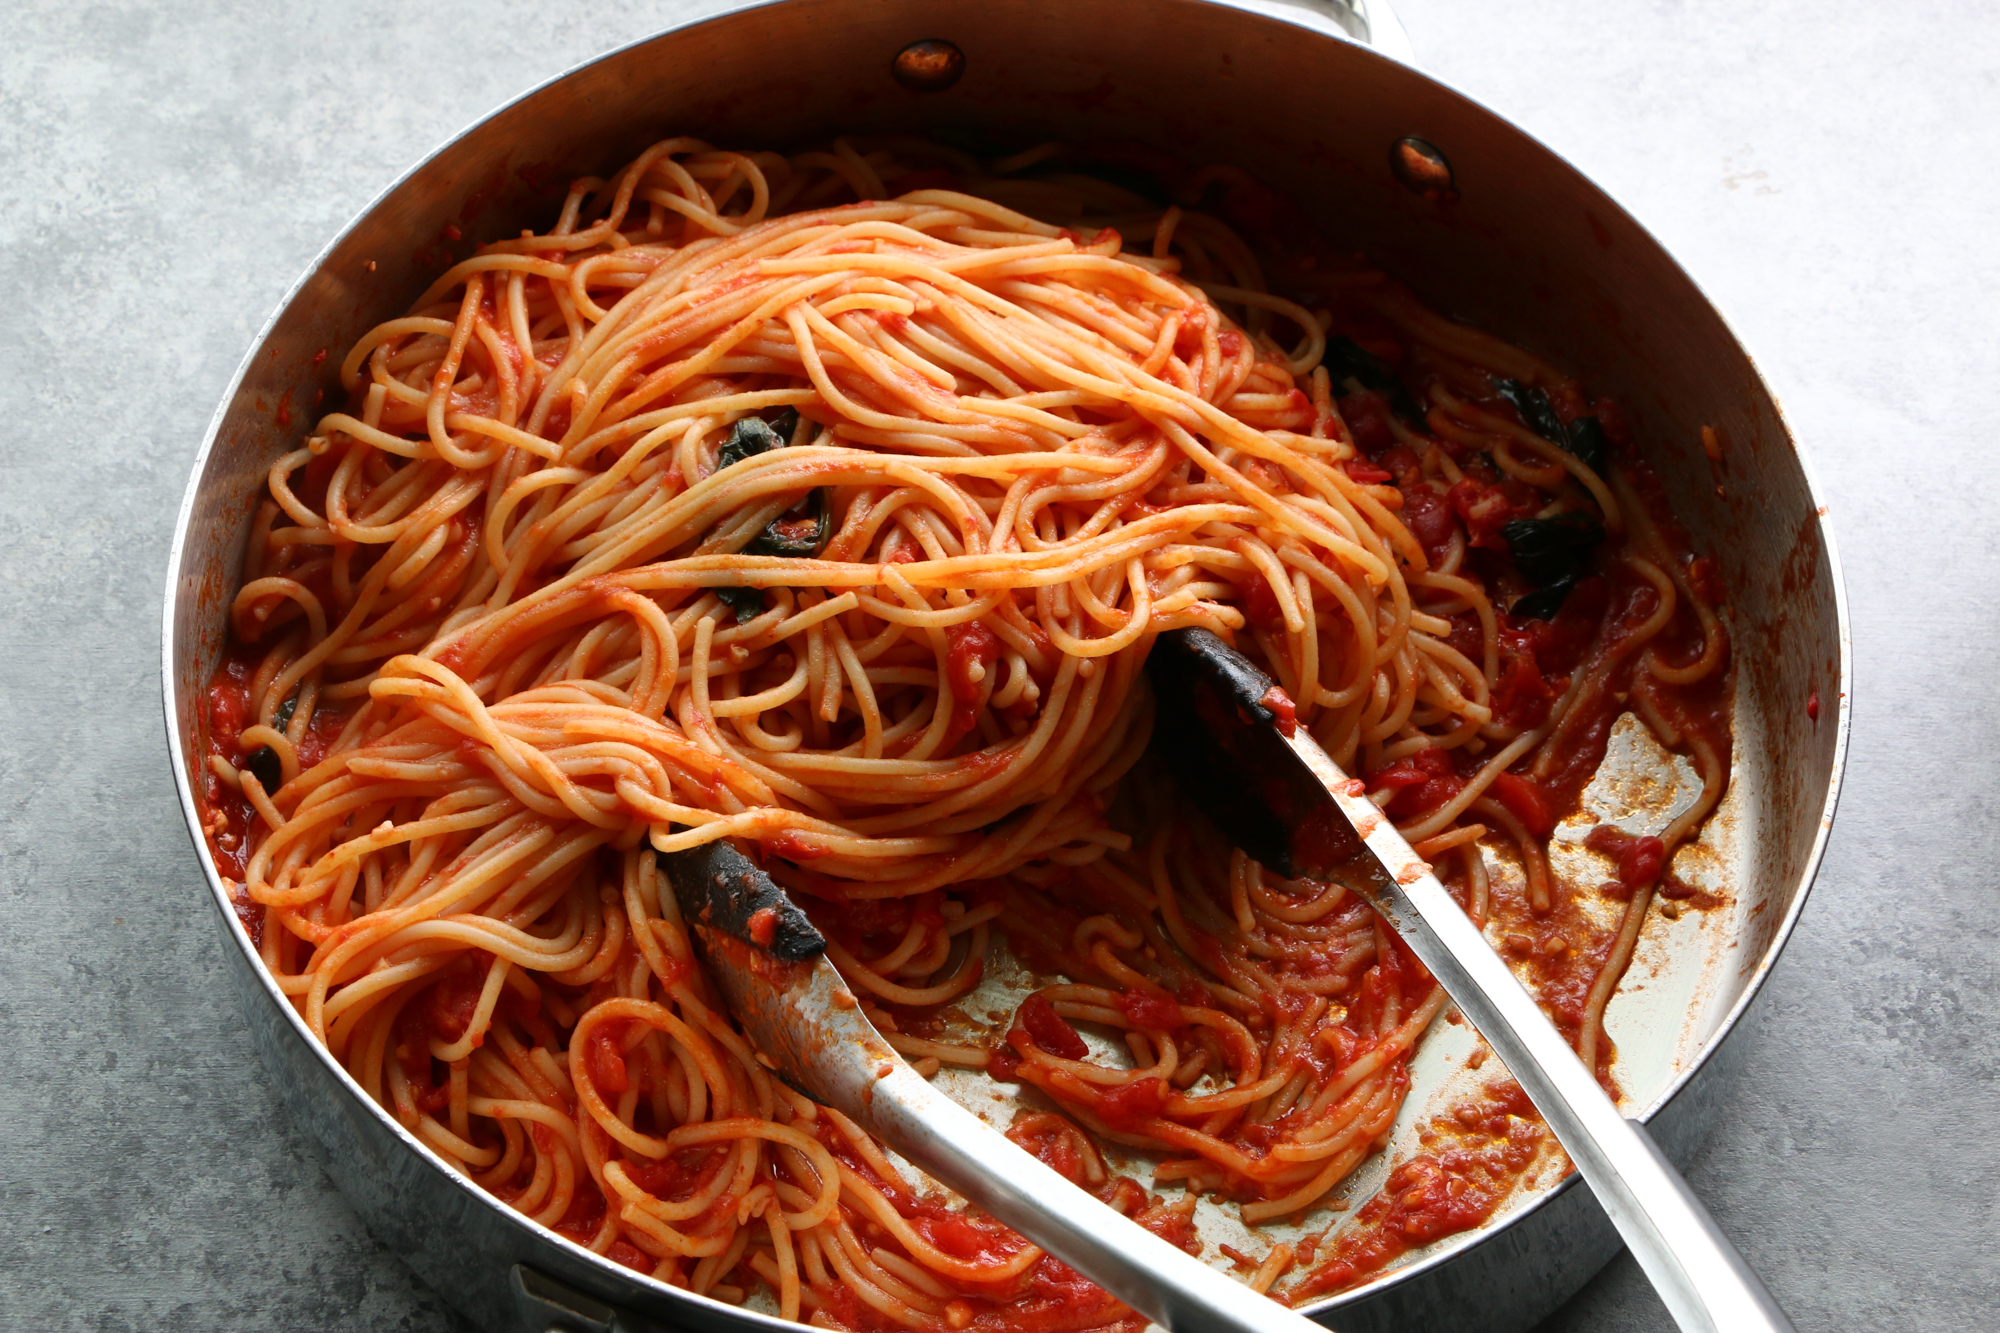 Spaghetti Images